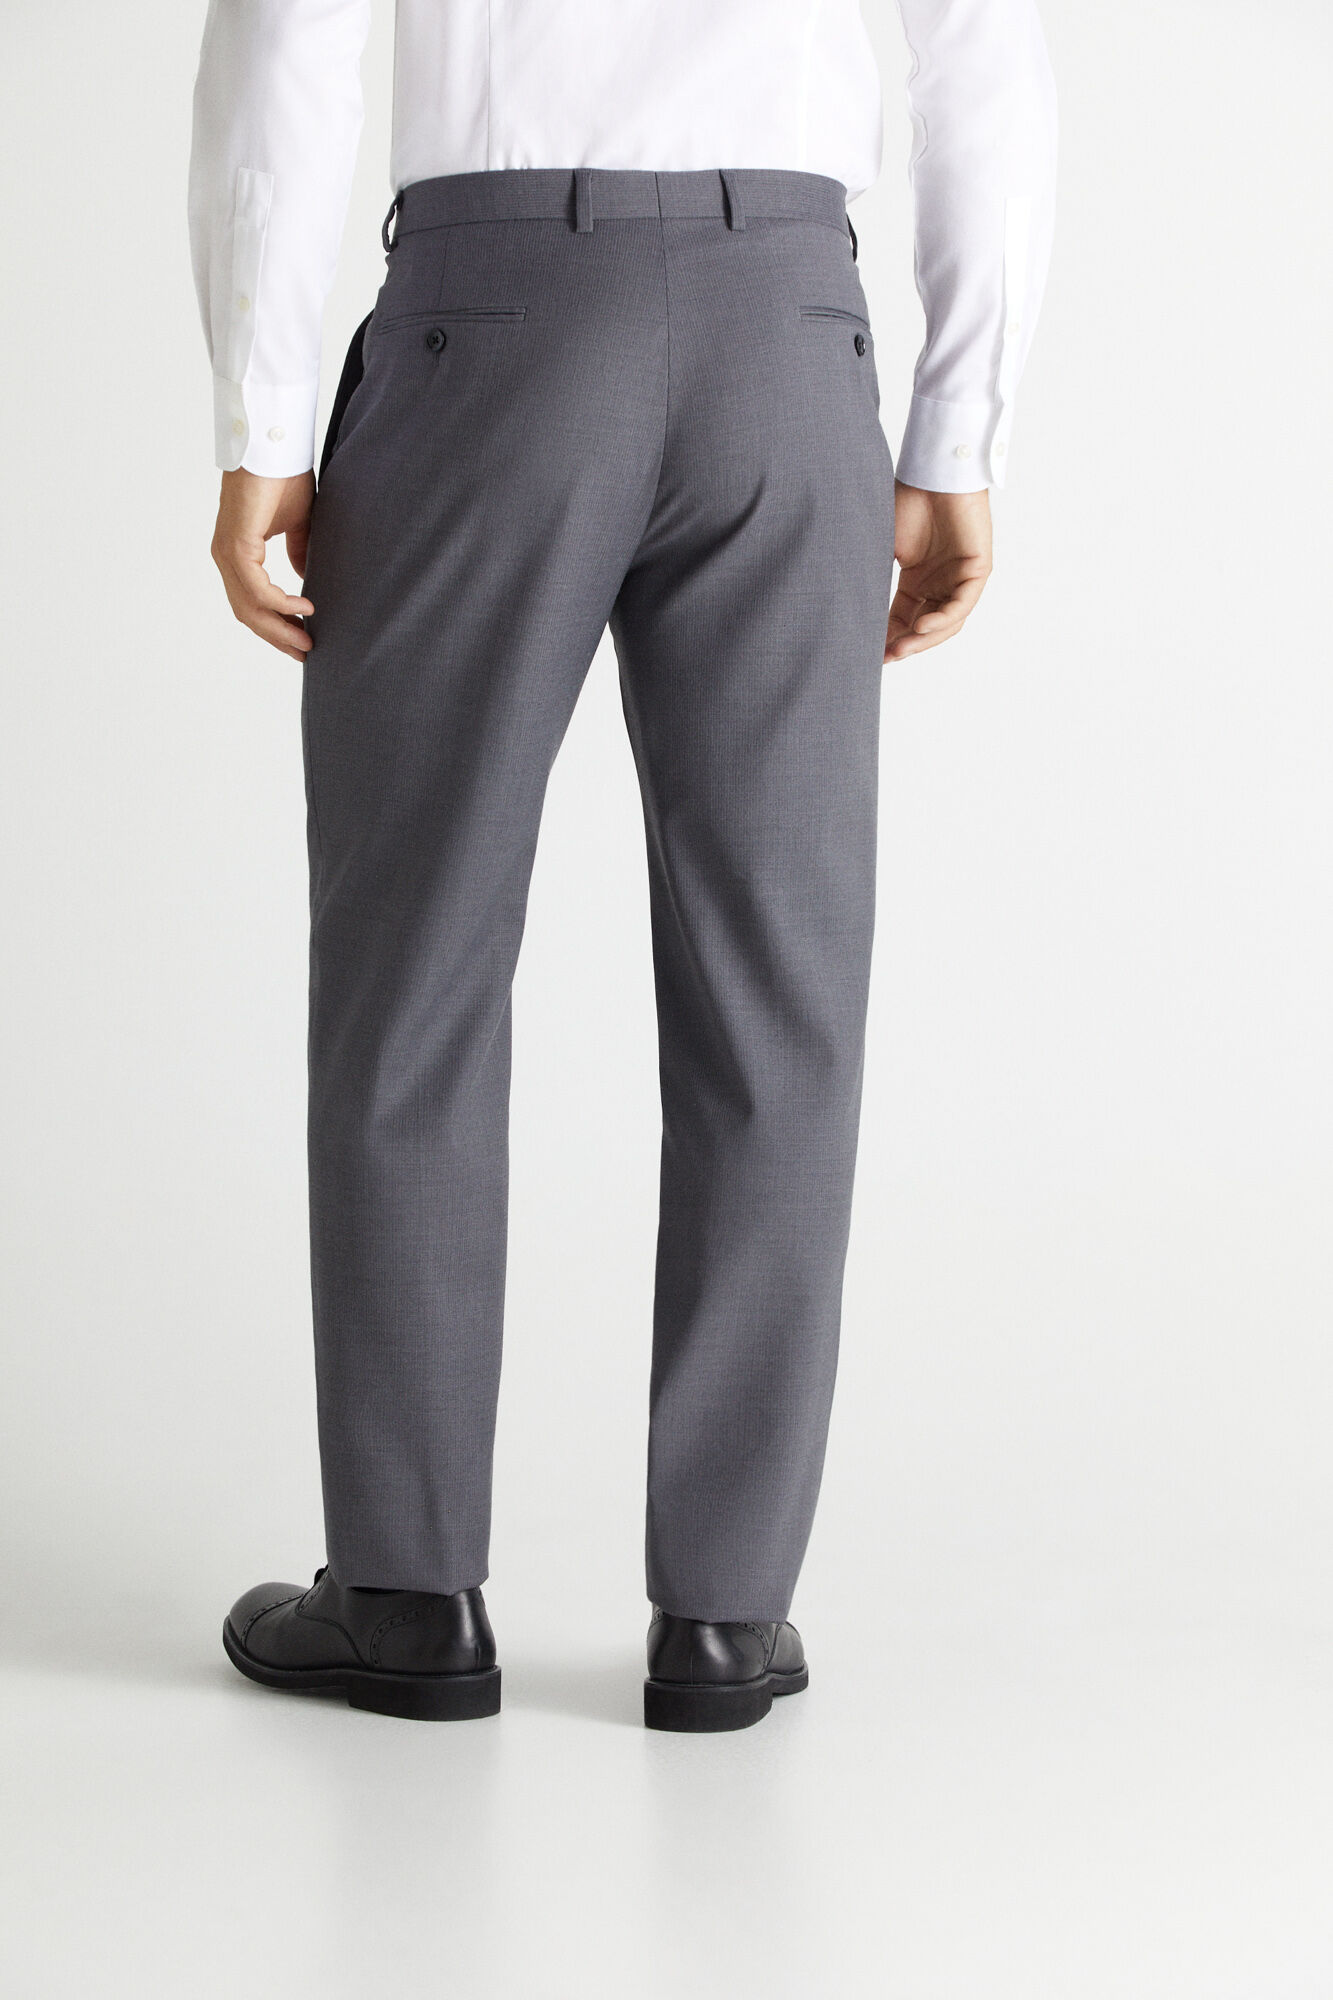 ProDec Trousers Painters Decorators Pants Pockets Triple Stitch Stain  Resistant | eBay